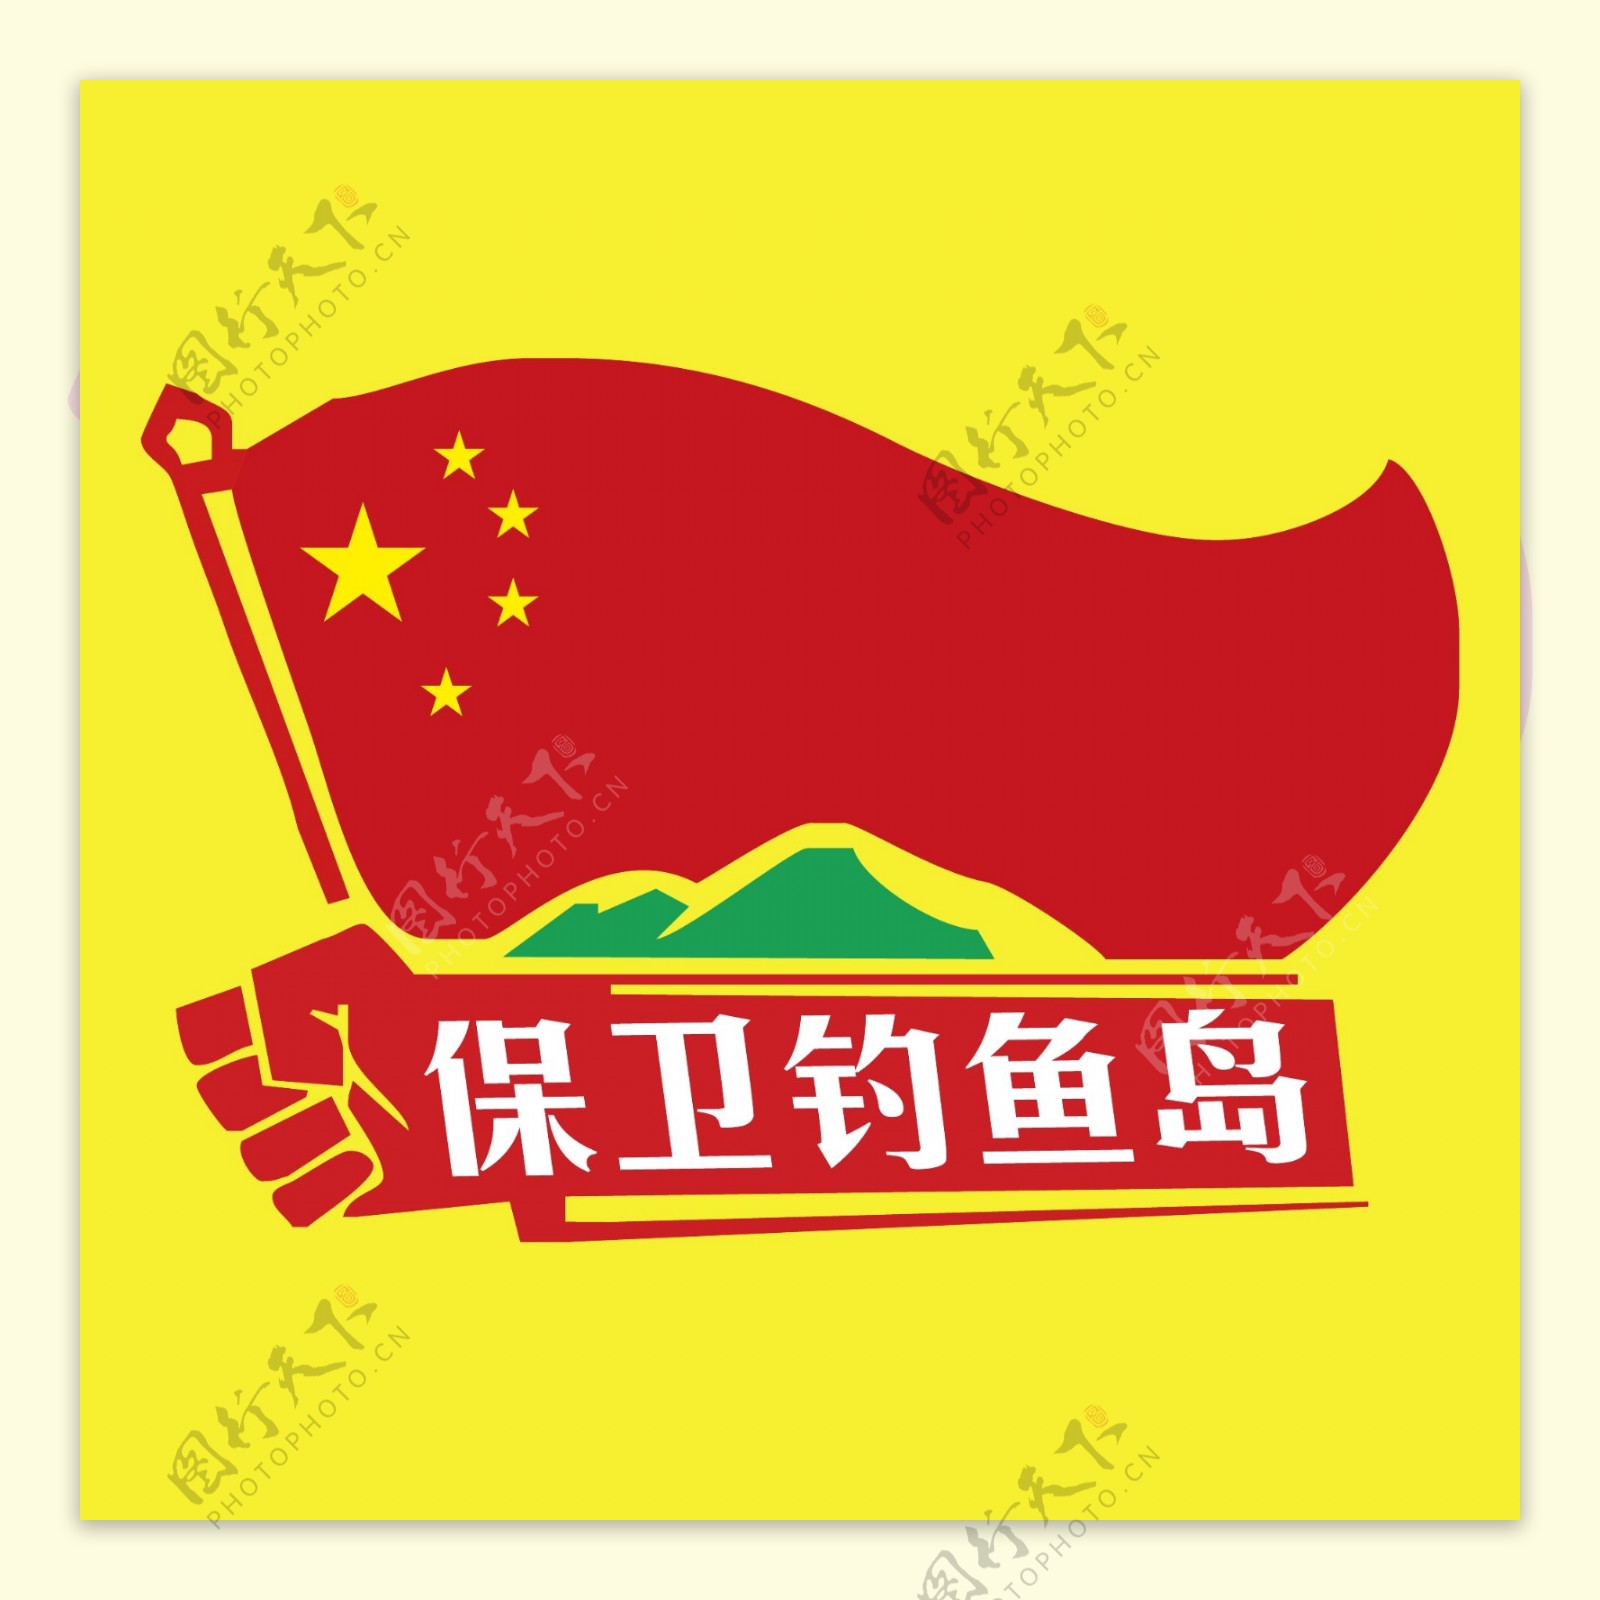 印花矢量图T恤图案图文结合钓鱼岛中国国旗免费素材